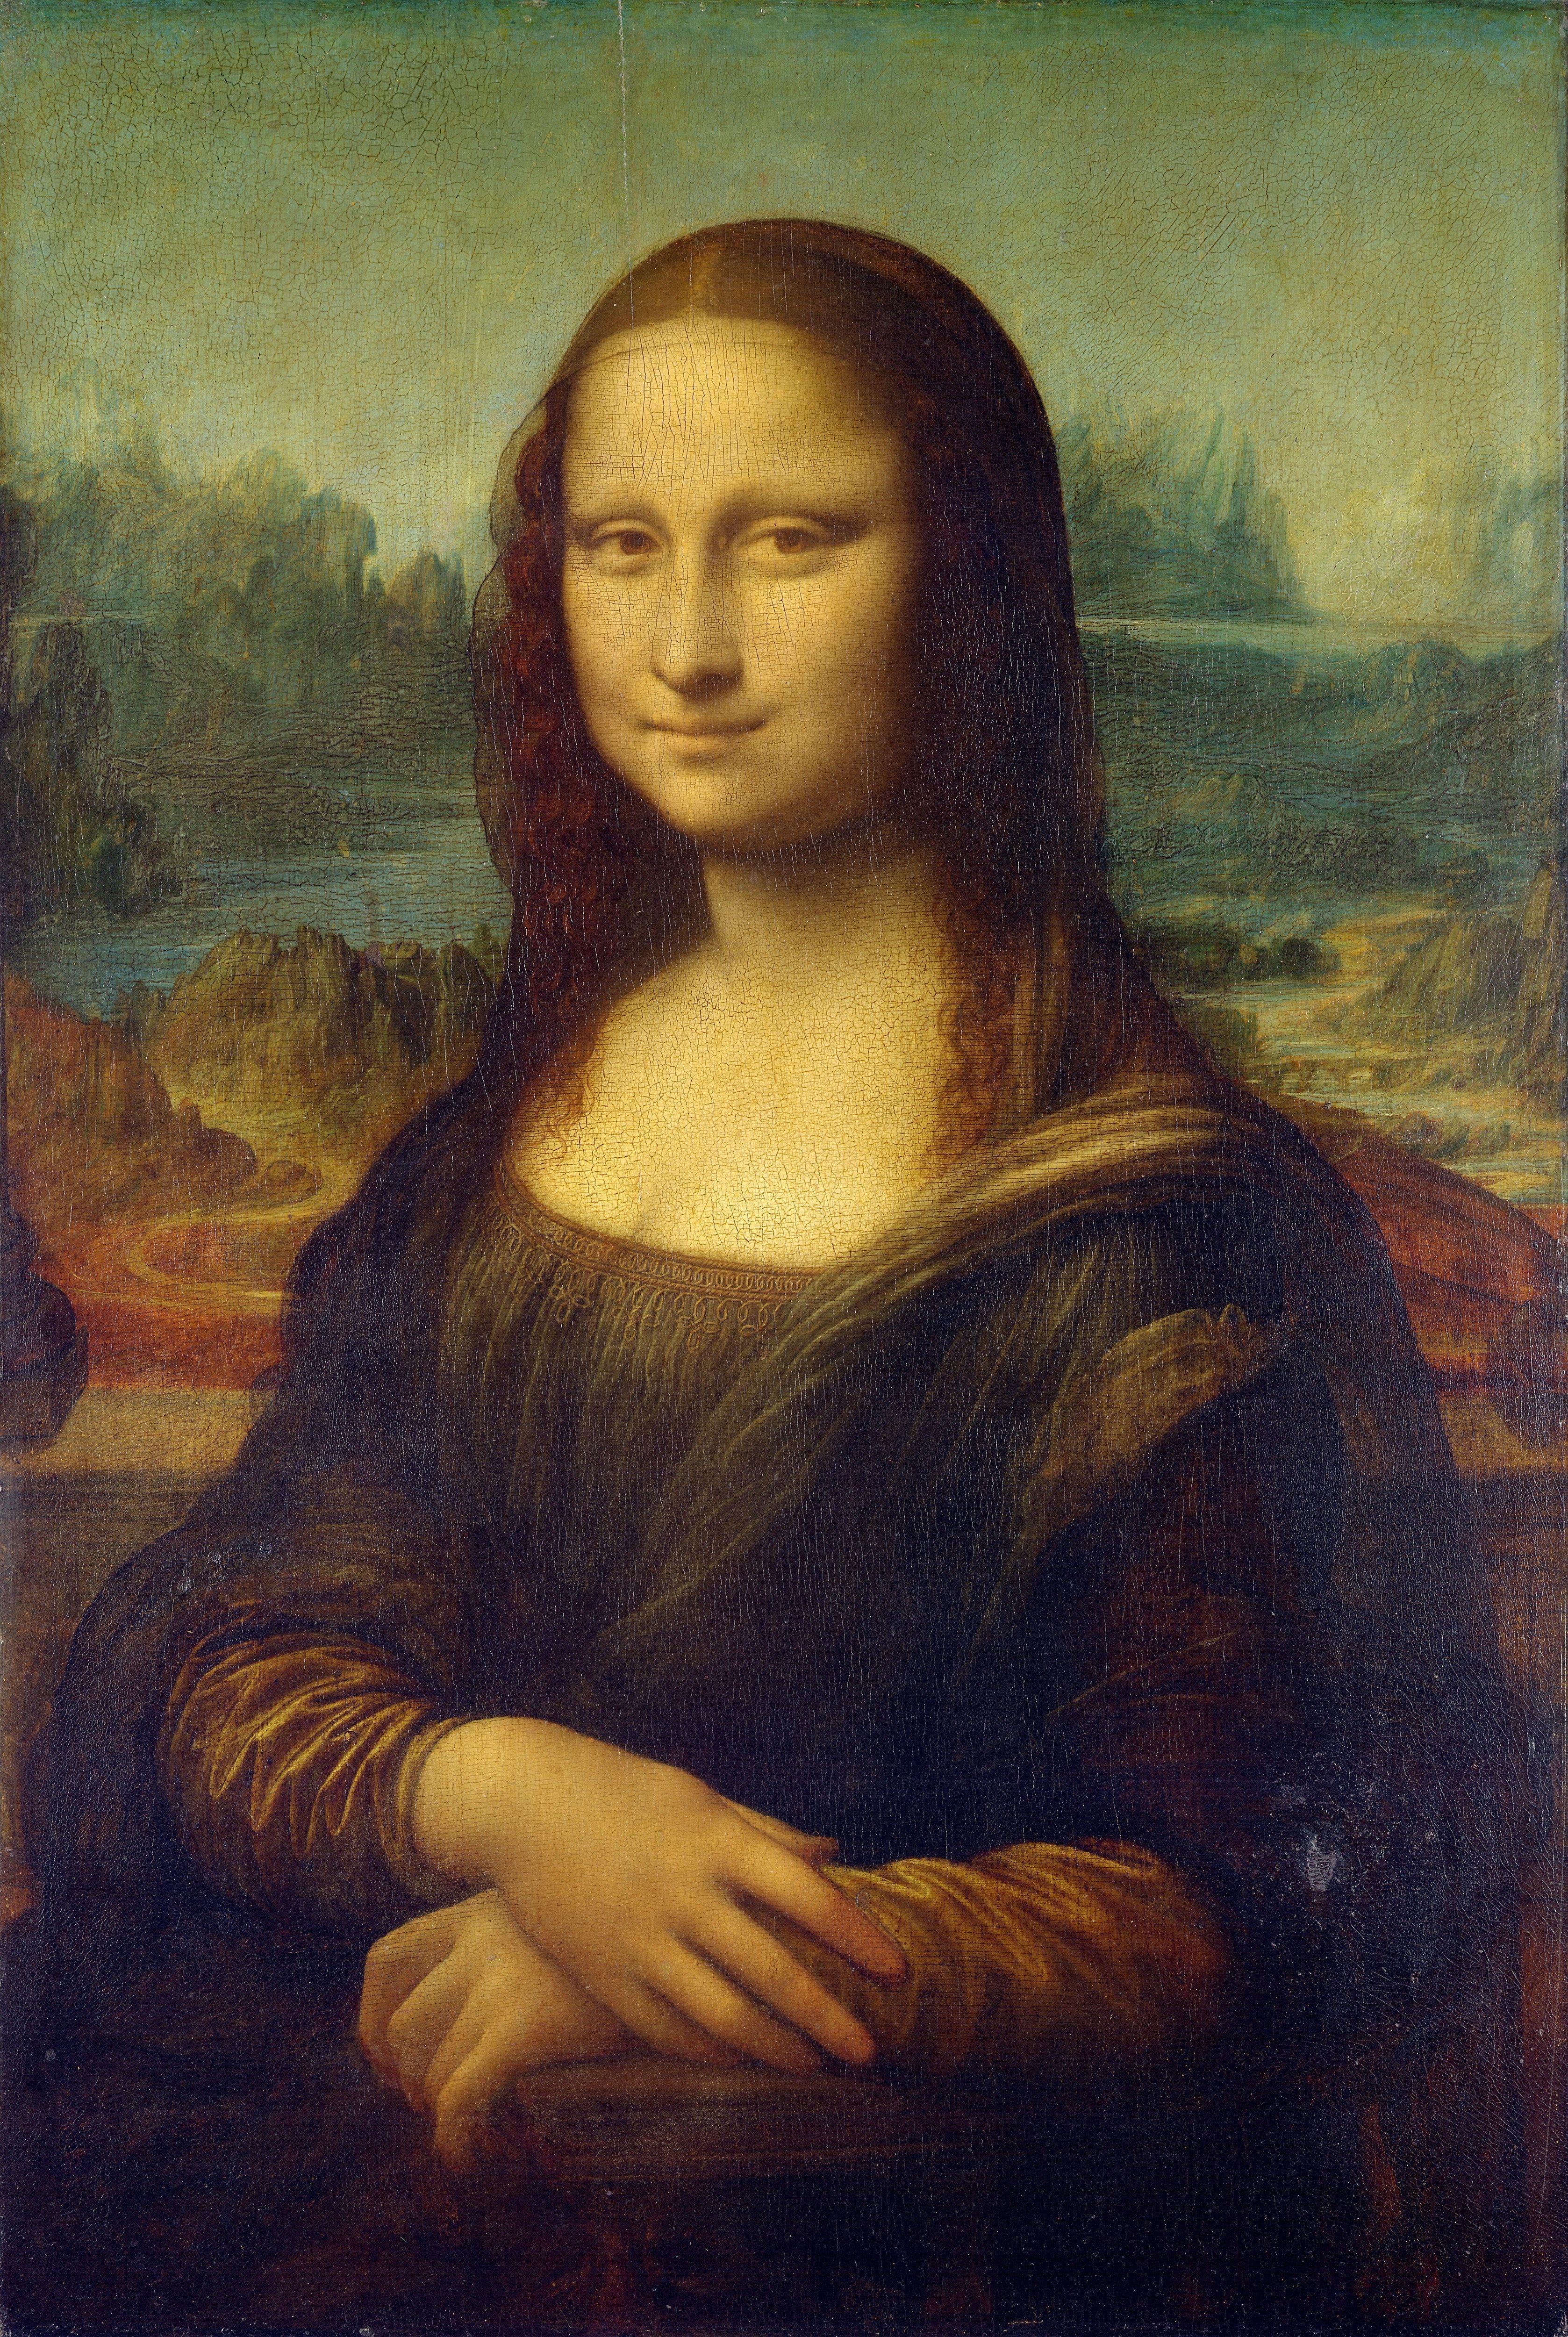 Mona Lisa Painting · Free